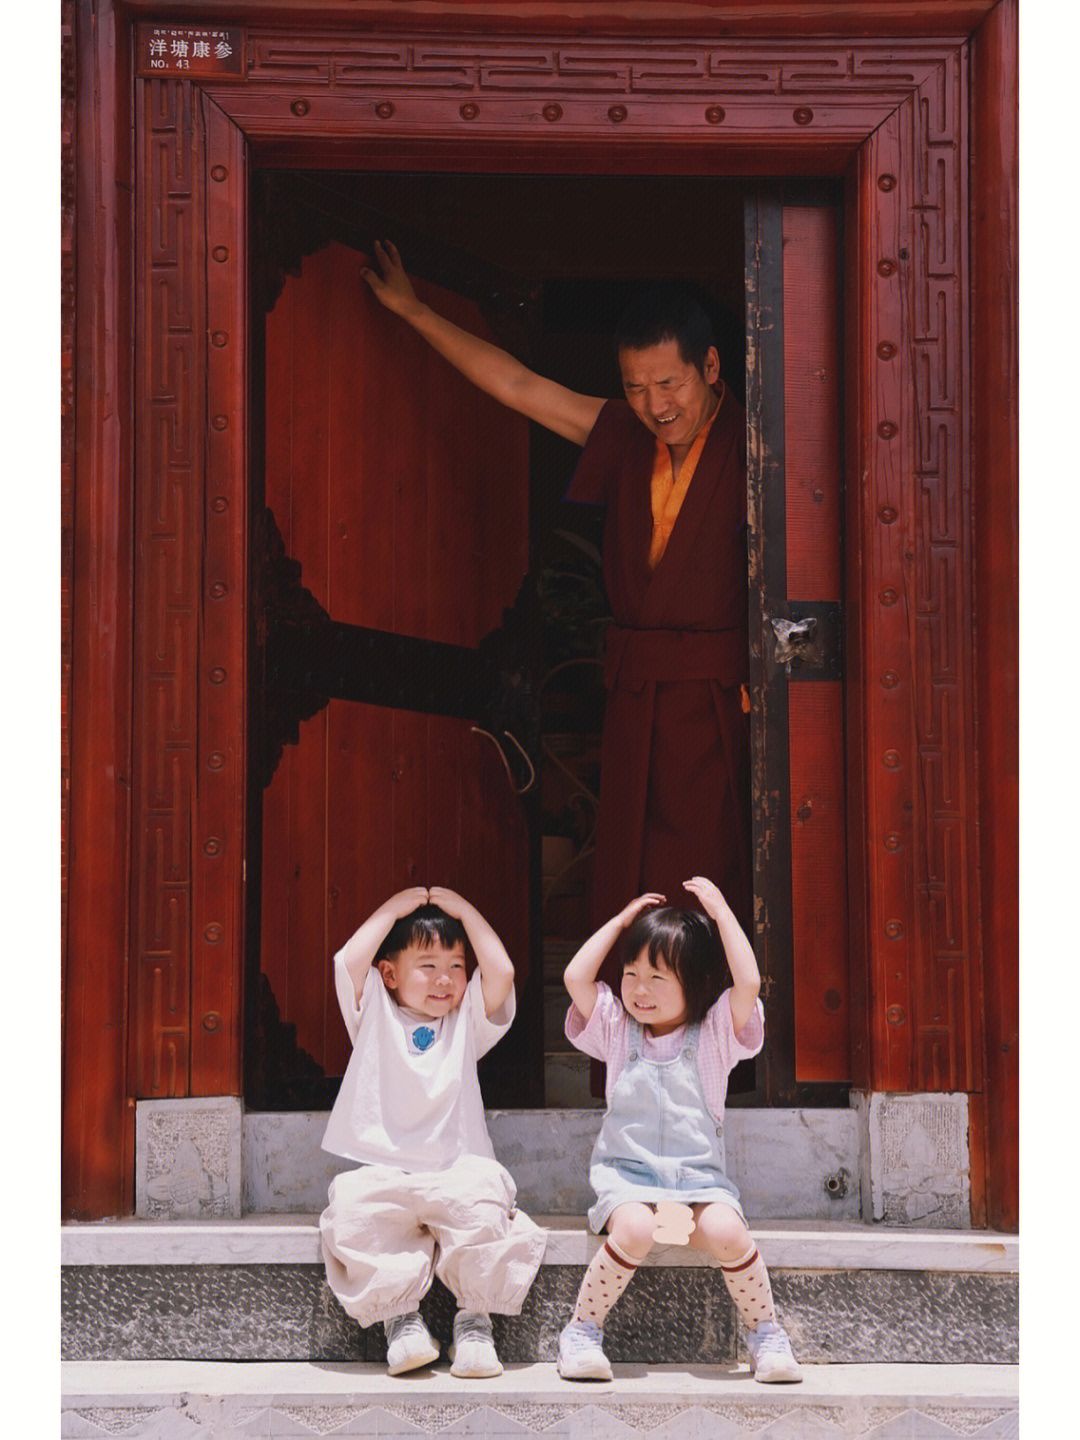 逛完松赞林寺打算离开的时候意外发现了这扇门特别出片就让两个崽坐着